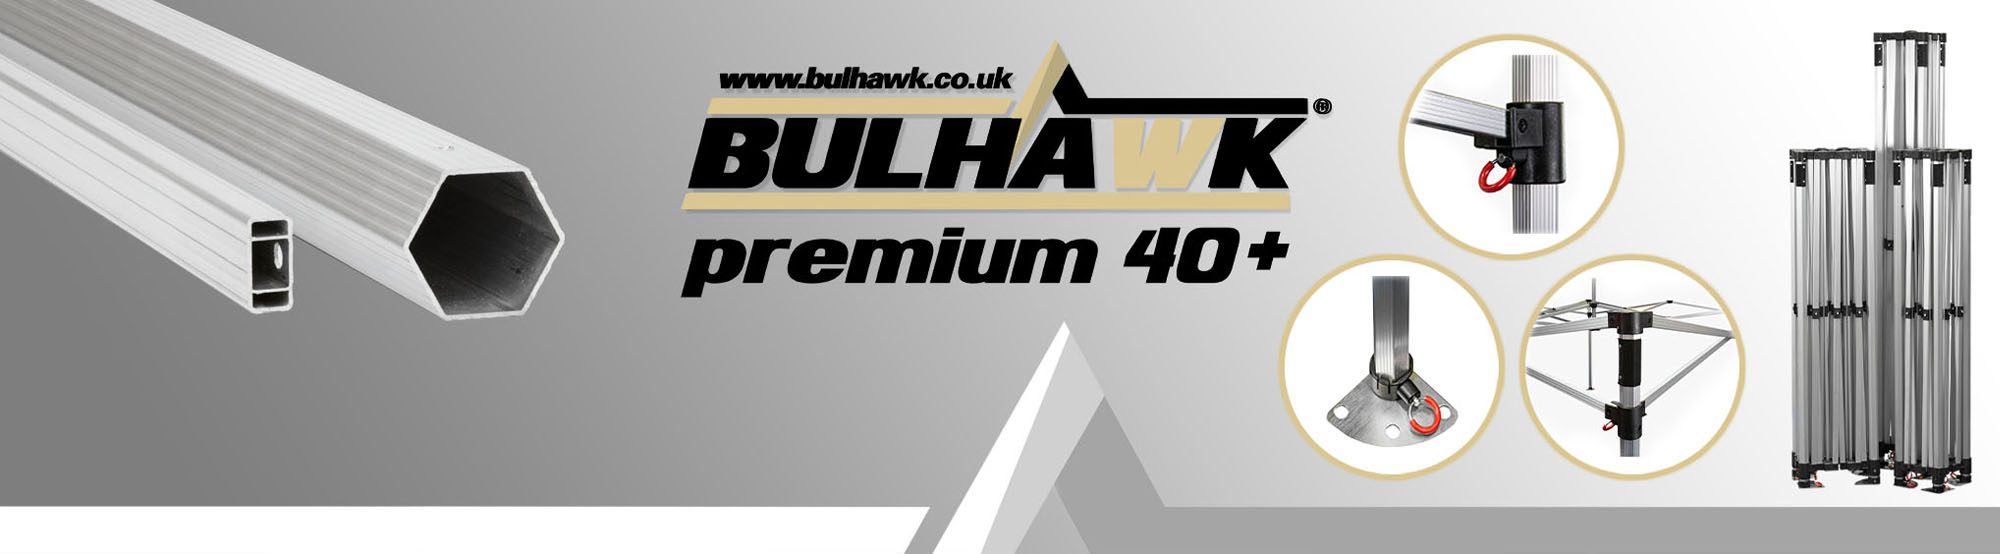 Premium Plus 40